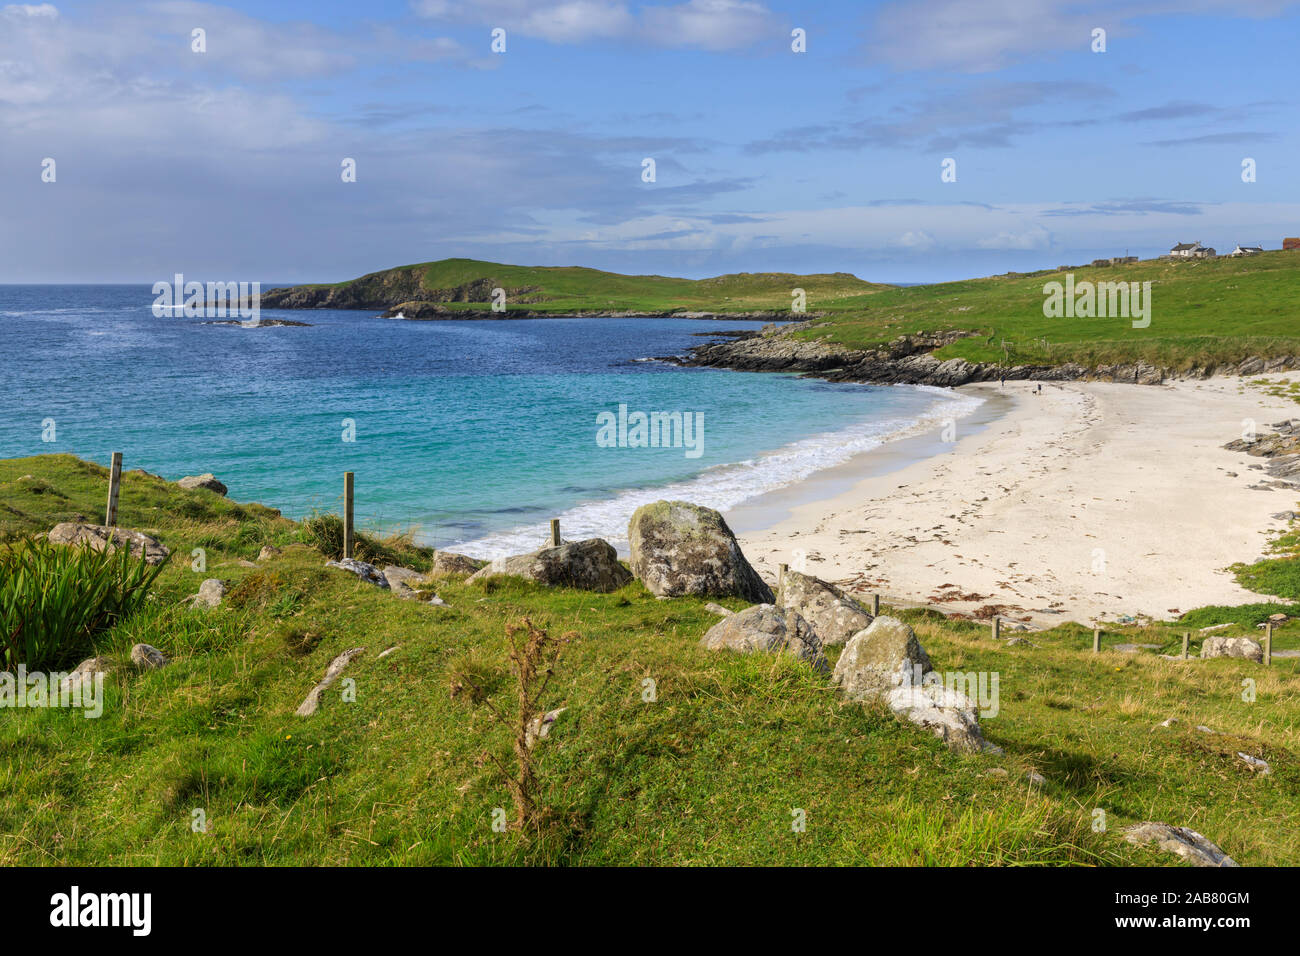 Mahlzeit Strand, weißer Sand, türkises Wasser, einer von Shetland's Finest, Insel von West Burra, Shetlandinseln, Schottland, Großbritannien, Europa Stockfoto